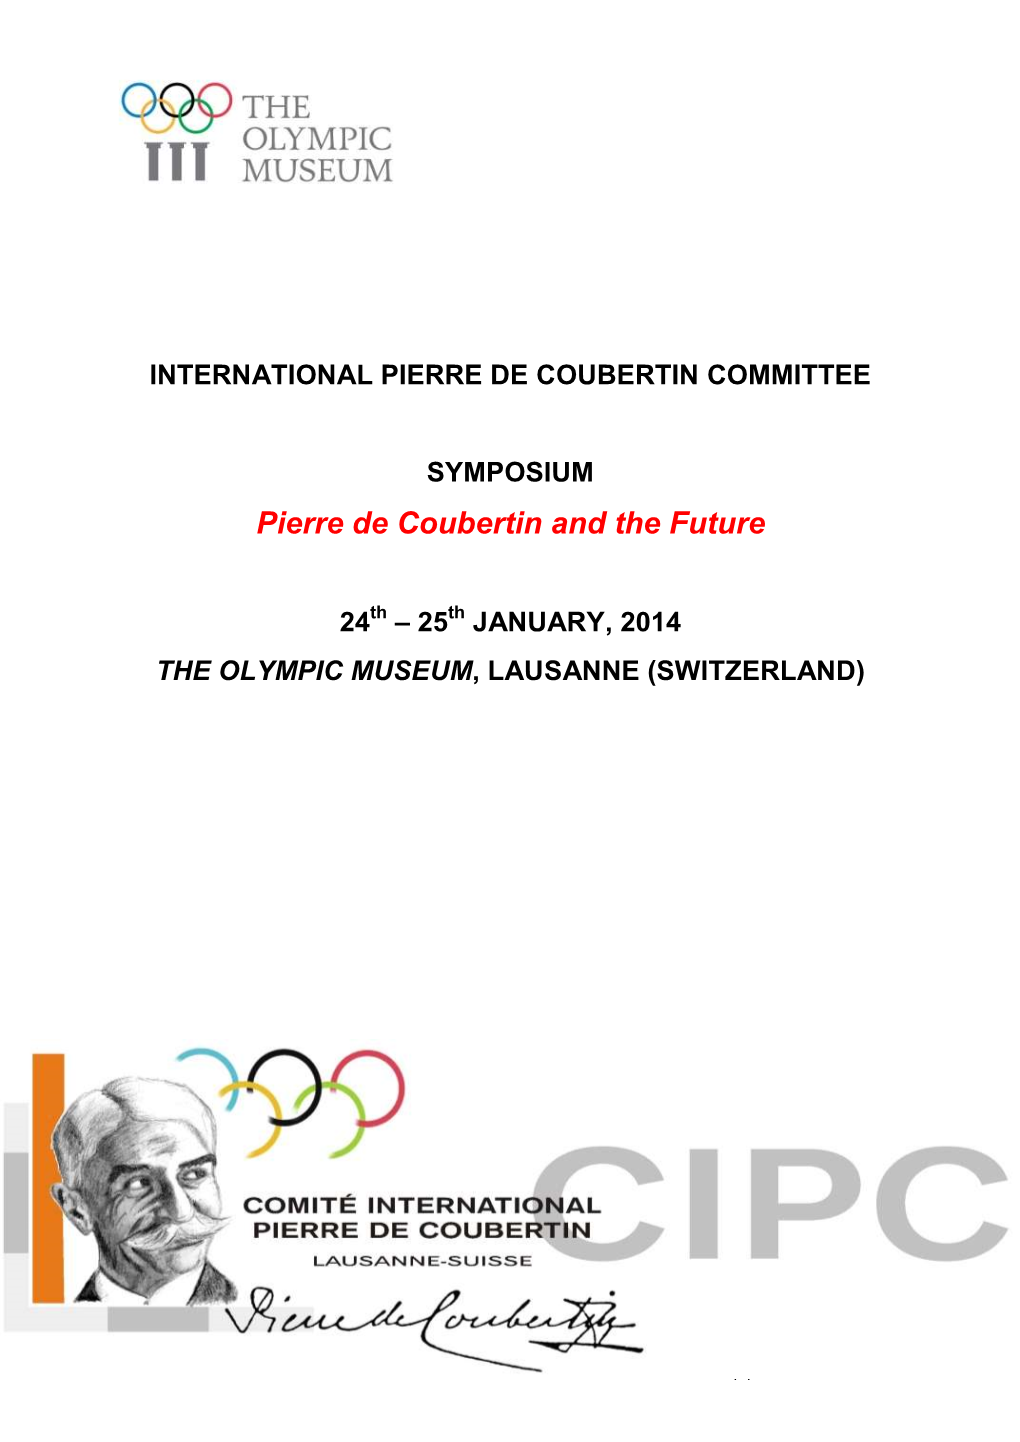 Pierre De Coubertin and the Future